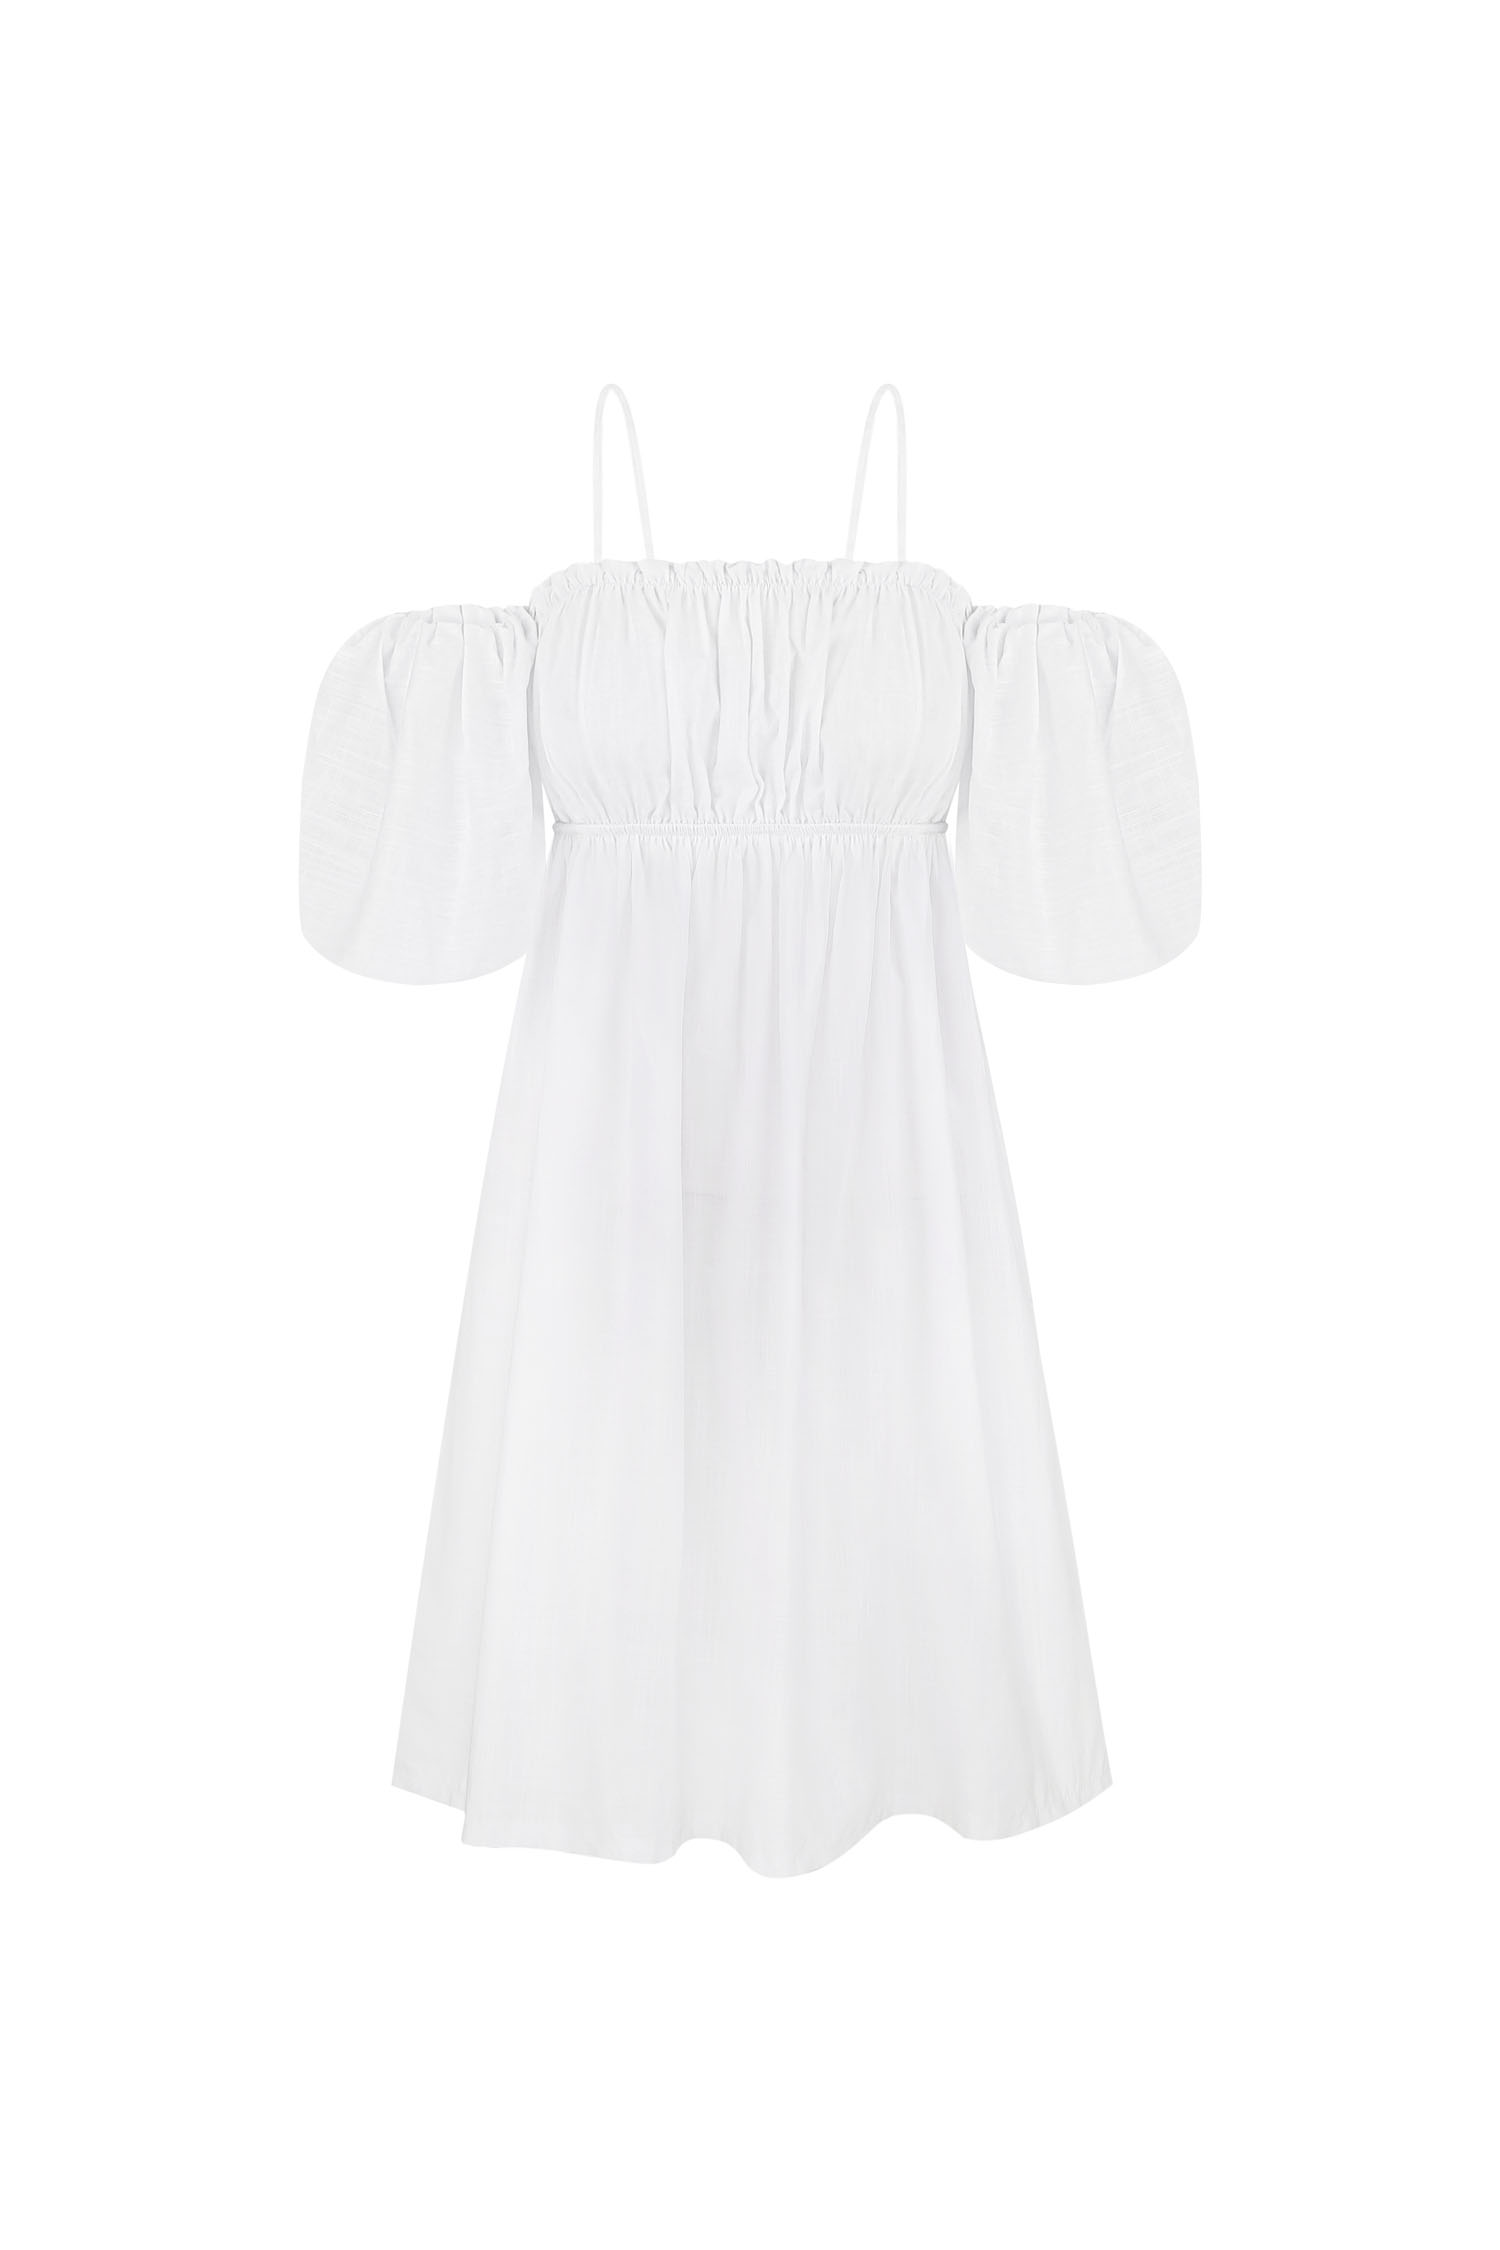 Сукня міні зі спущеними плечима біла (eco) - THE LACE фото 158864